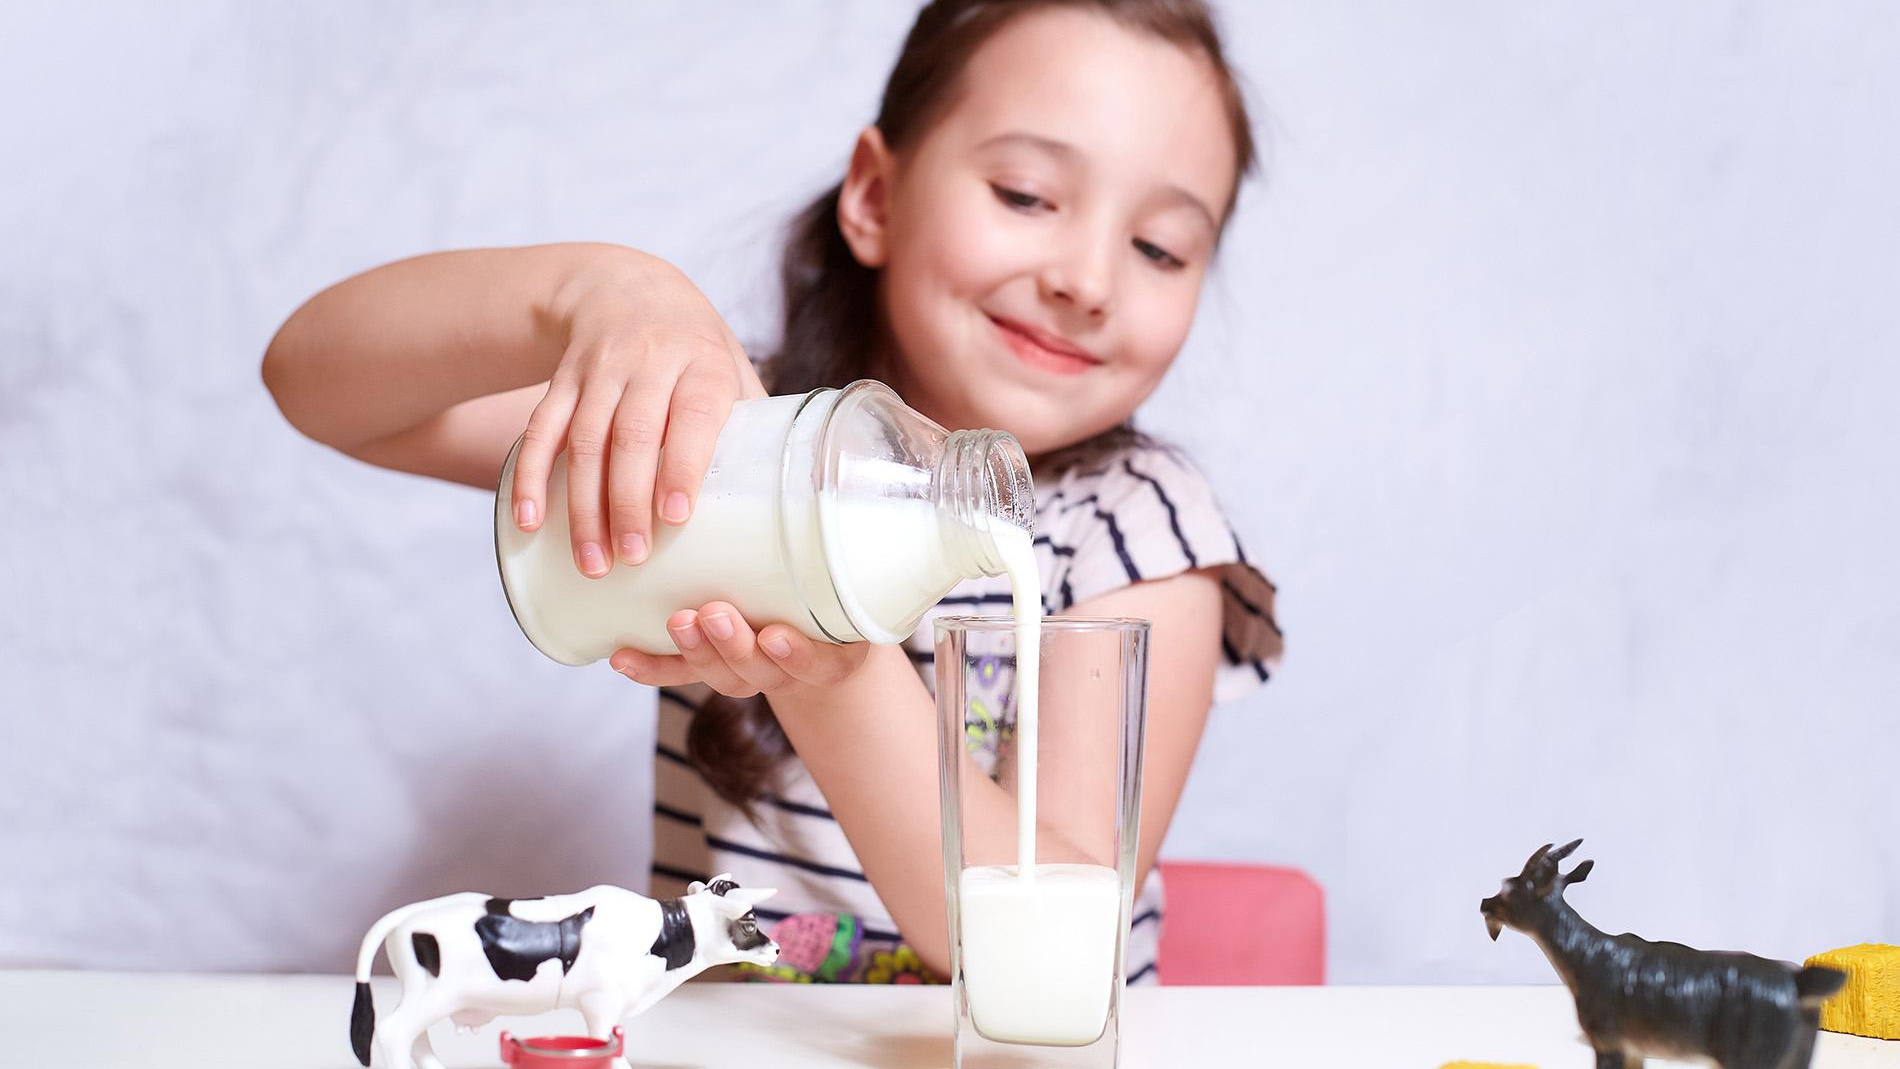 Правда ли, что молоко повышает холестерин и приводит к раку? Разбираемся с врачами